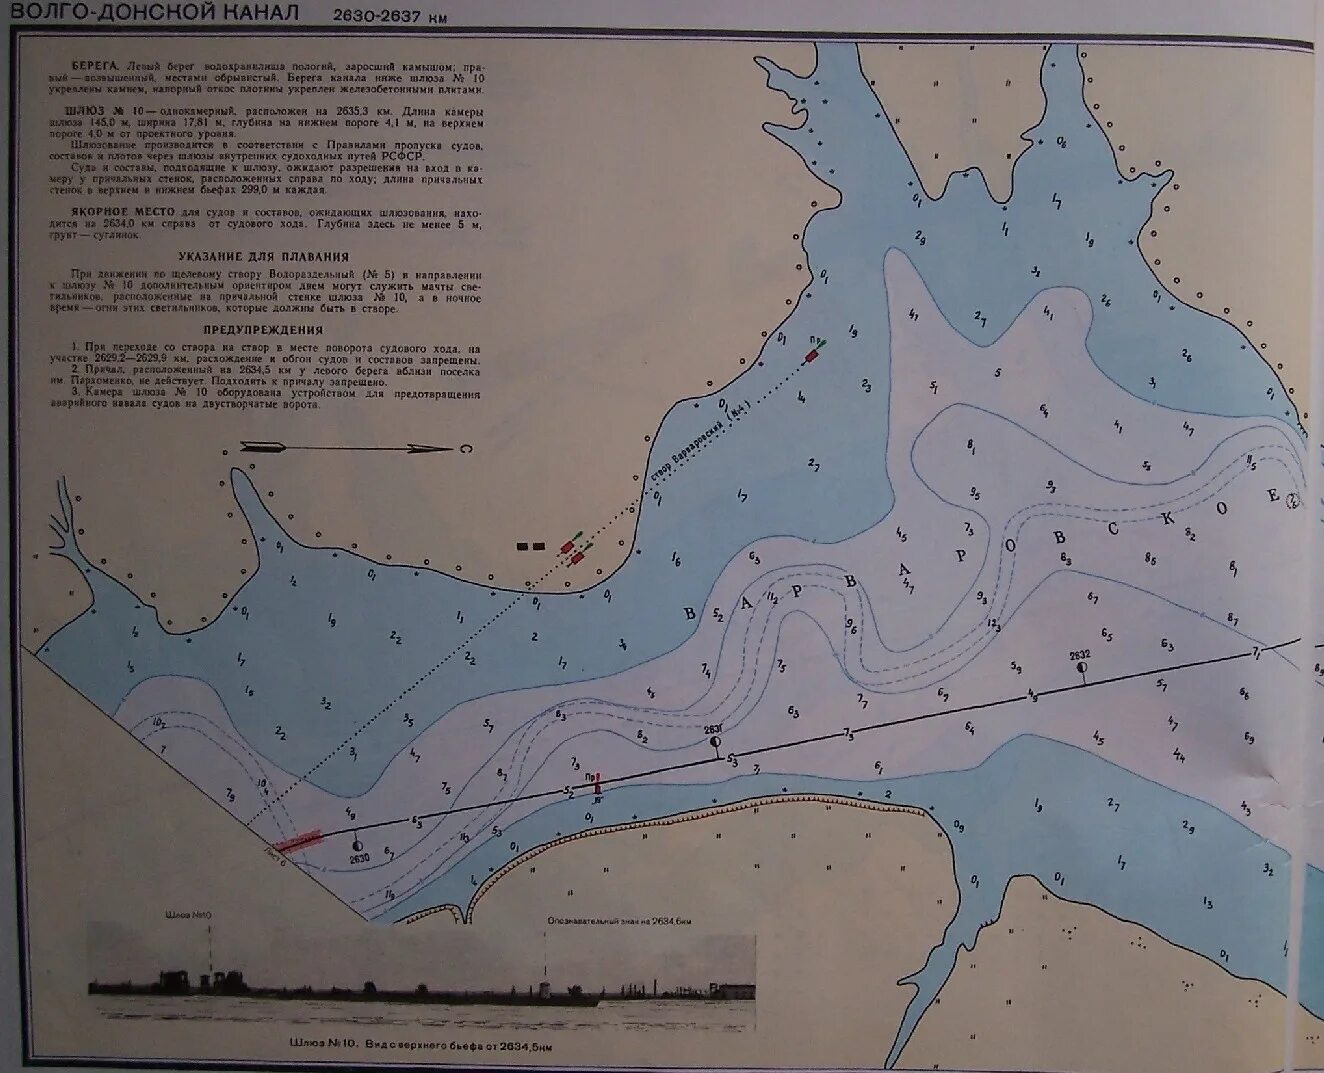 Во́лго-Донско́й судохо́дный кана́л на карте. Карта глубин Волго Донского канала. Схема шлюзов Волго-Донского канала. Карта Волго Донского канала.